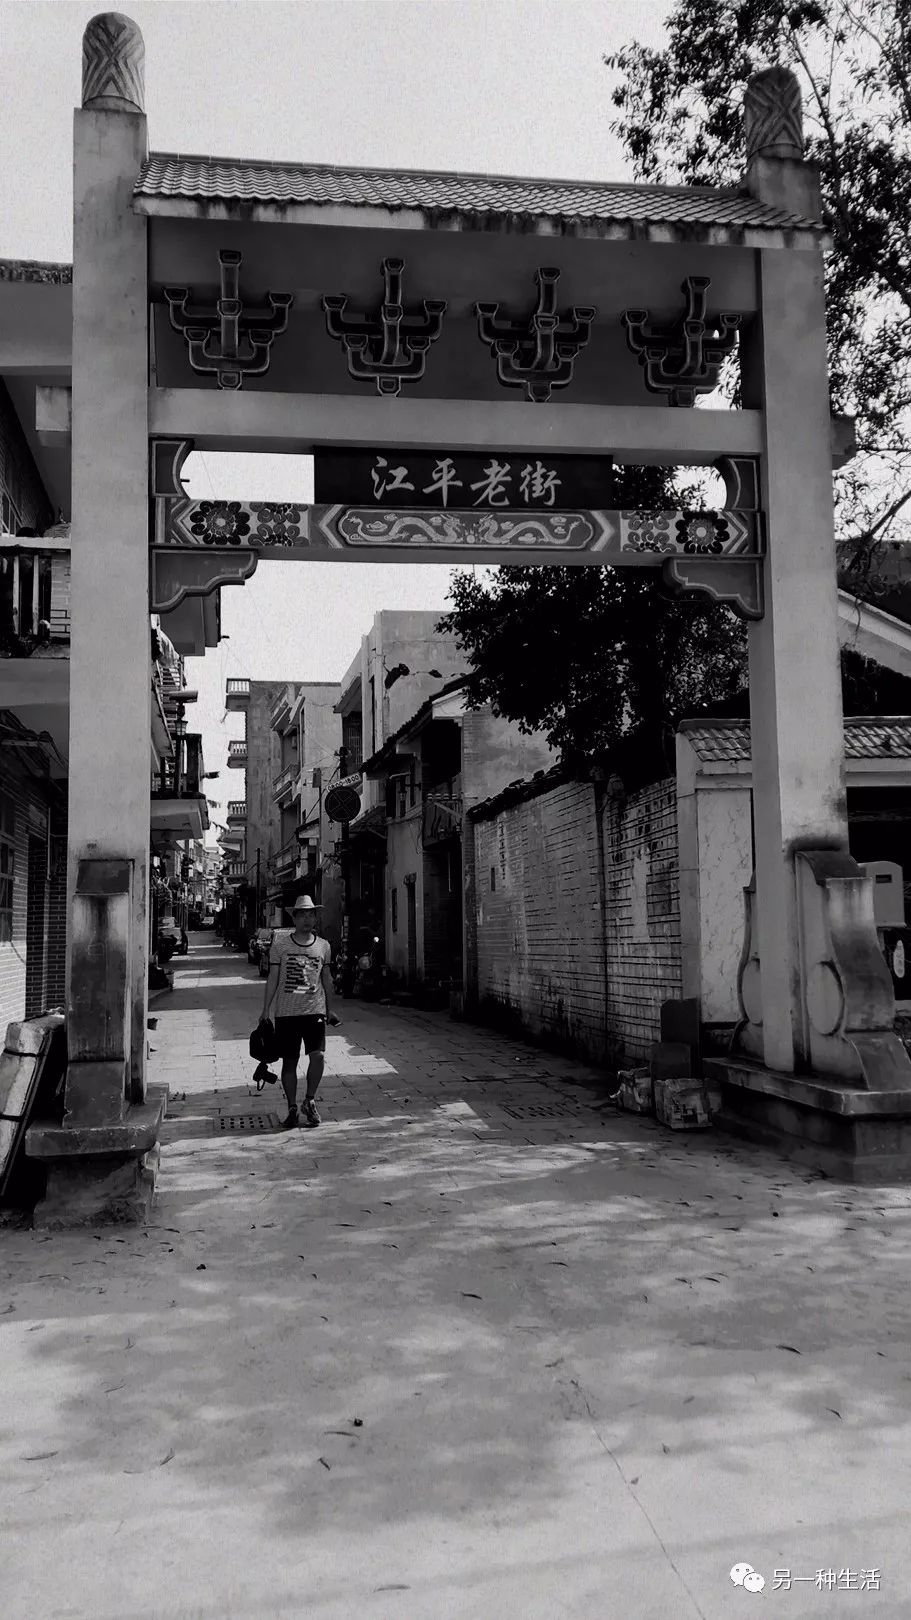 印象江平古镇,穿越回到70年代。